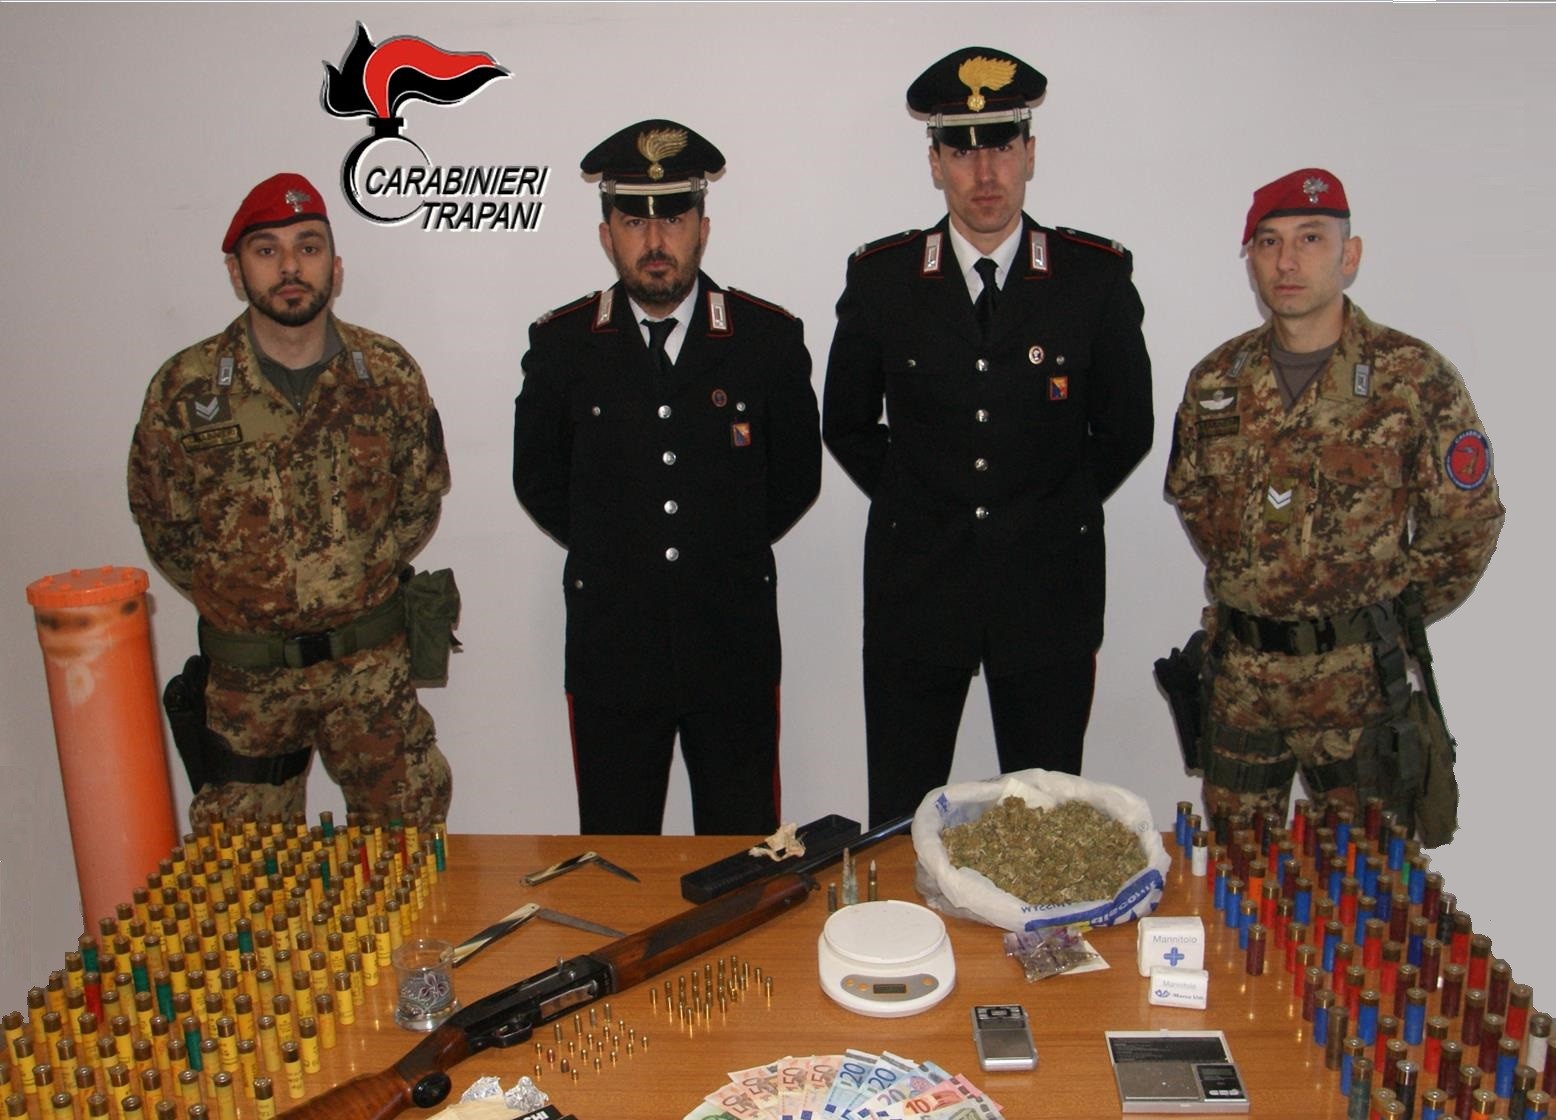 Ricettazione e detenzione di droga e armi: i carabinieri di Trapani arrestano un 37enne